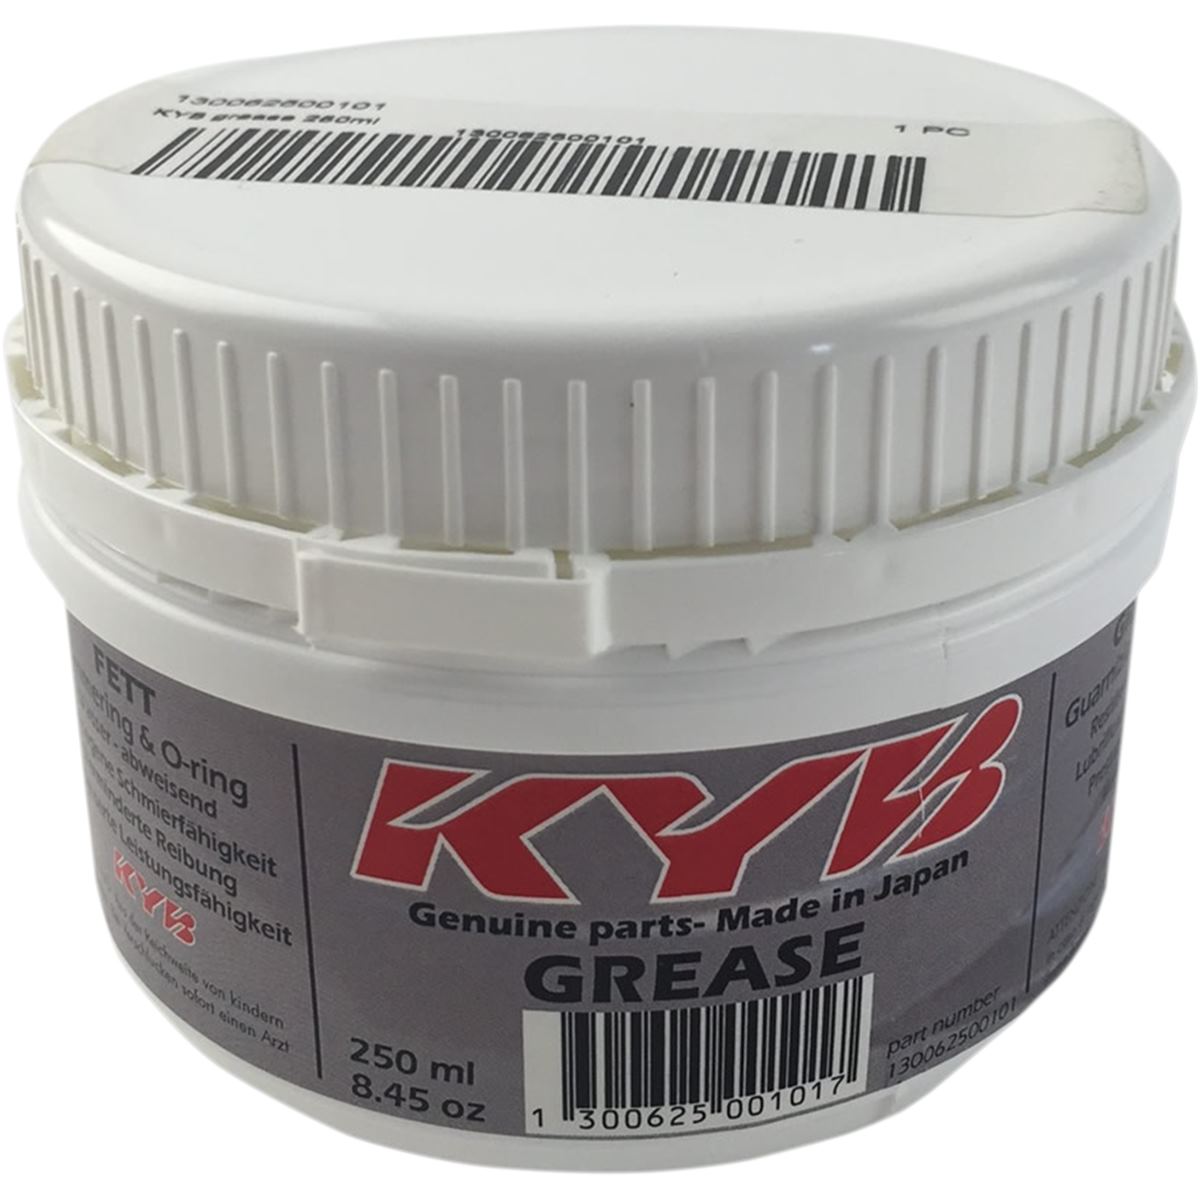 Kayaba Graisse  250 ml